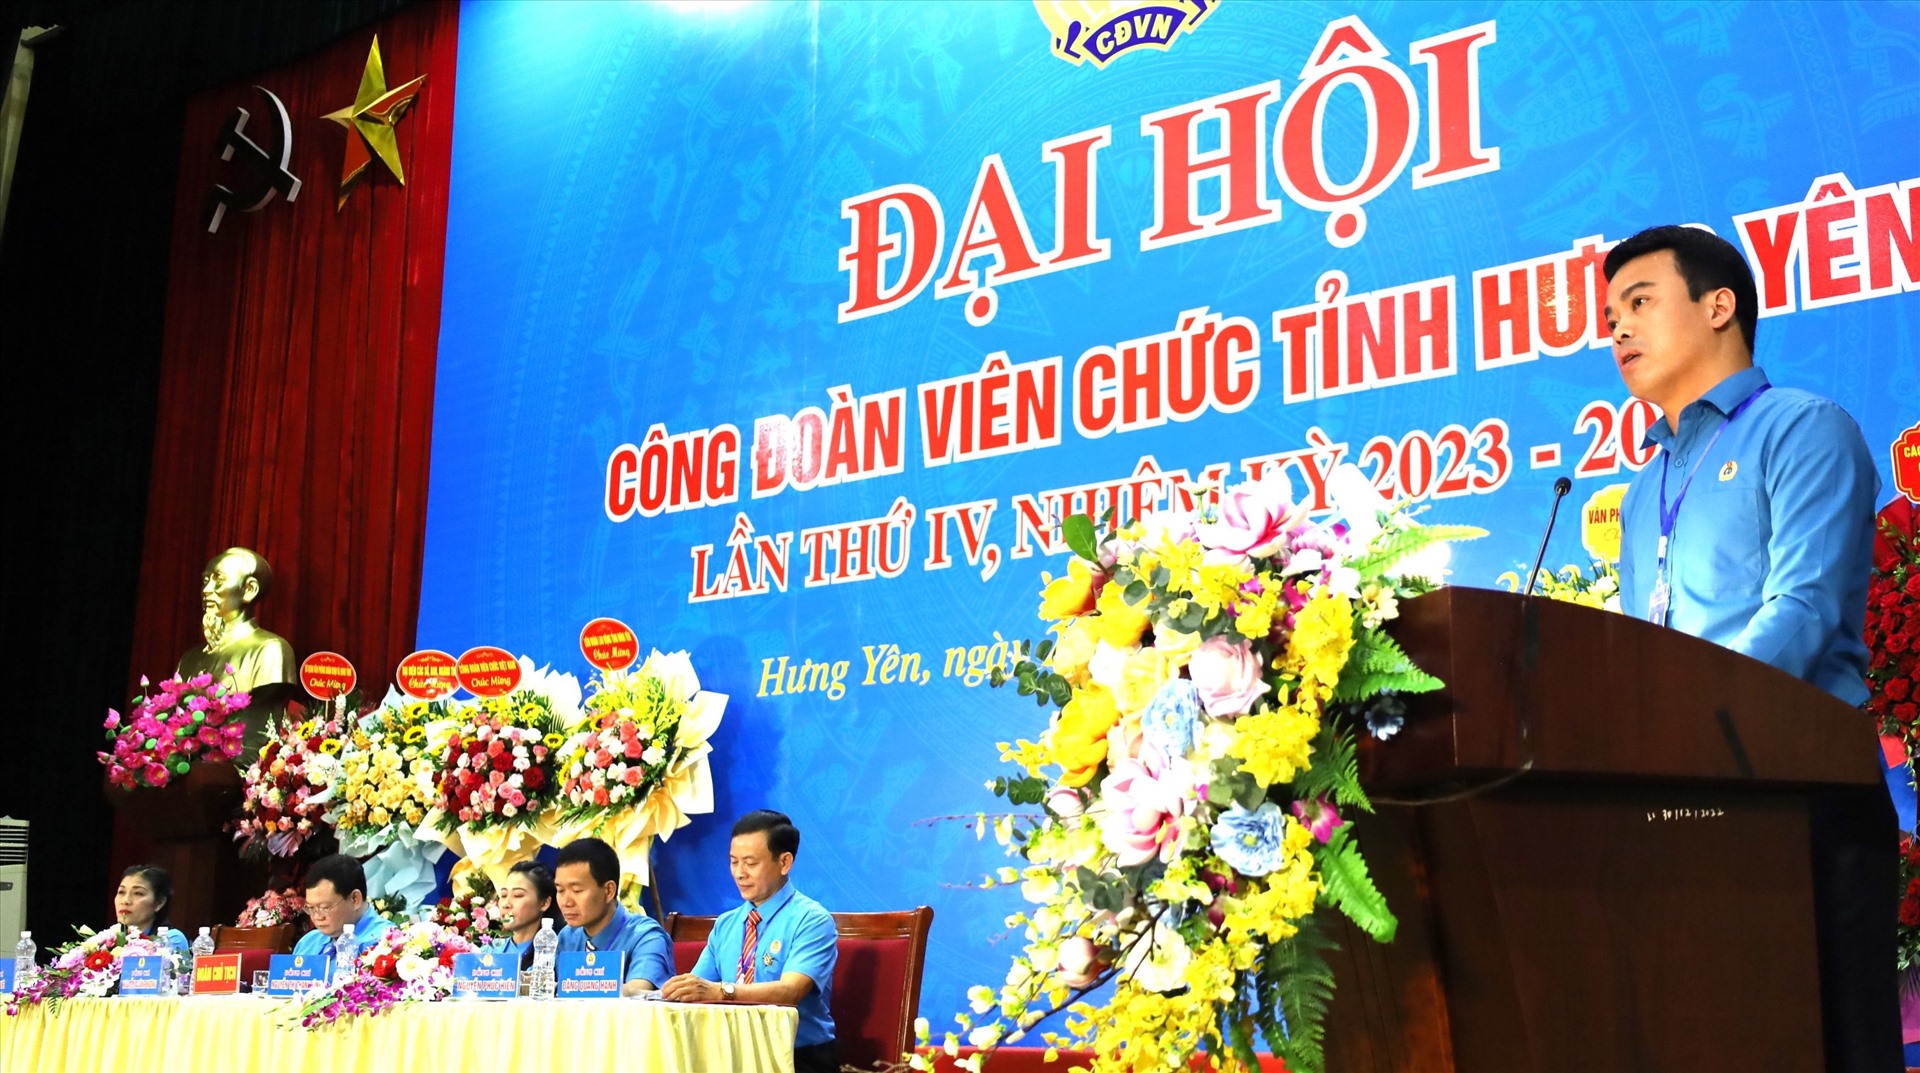 Ông Lê Quang Toản - Chủ tịch Liên đoàn Lao động tỉnh Hưng Yên phát biểu chỉ đạo tại đại hội. Ảnh: Đào Thu